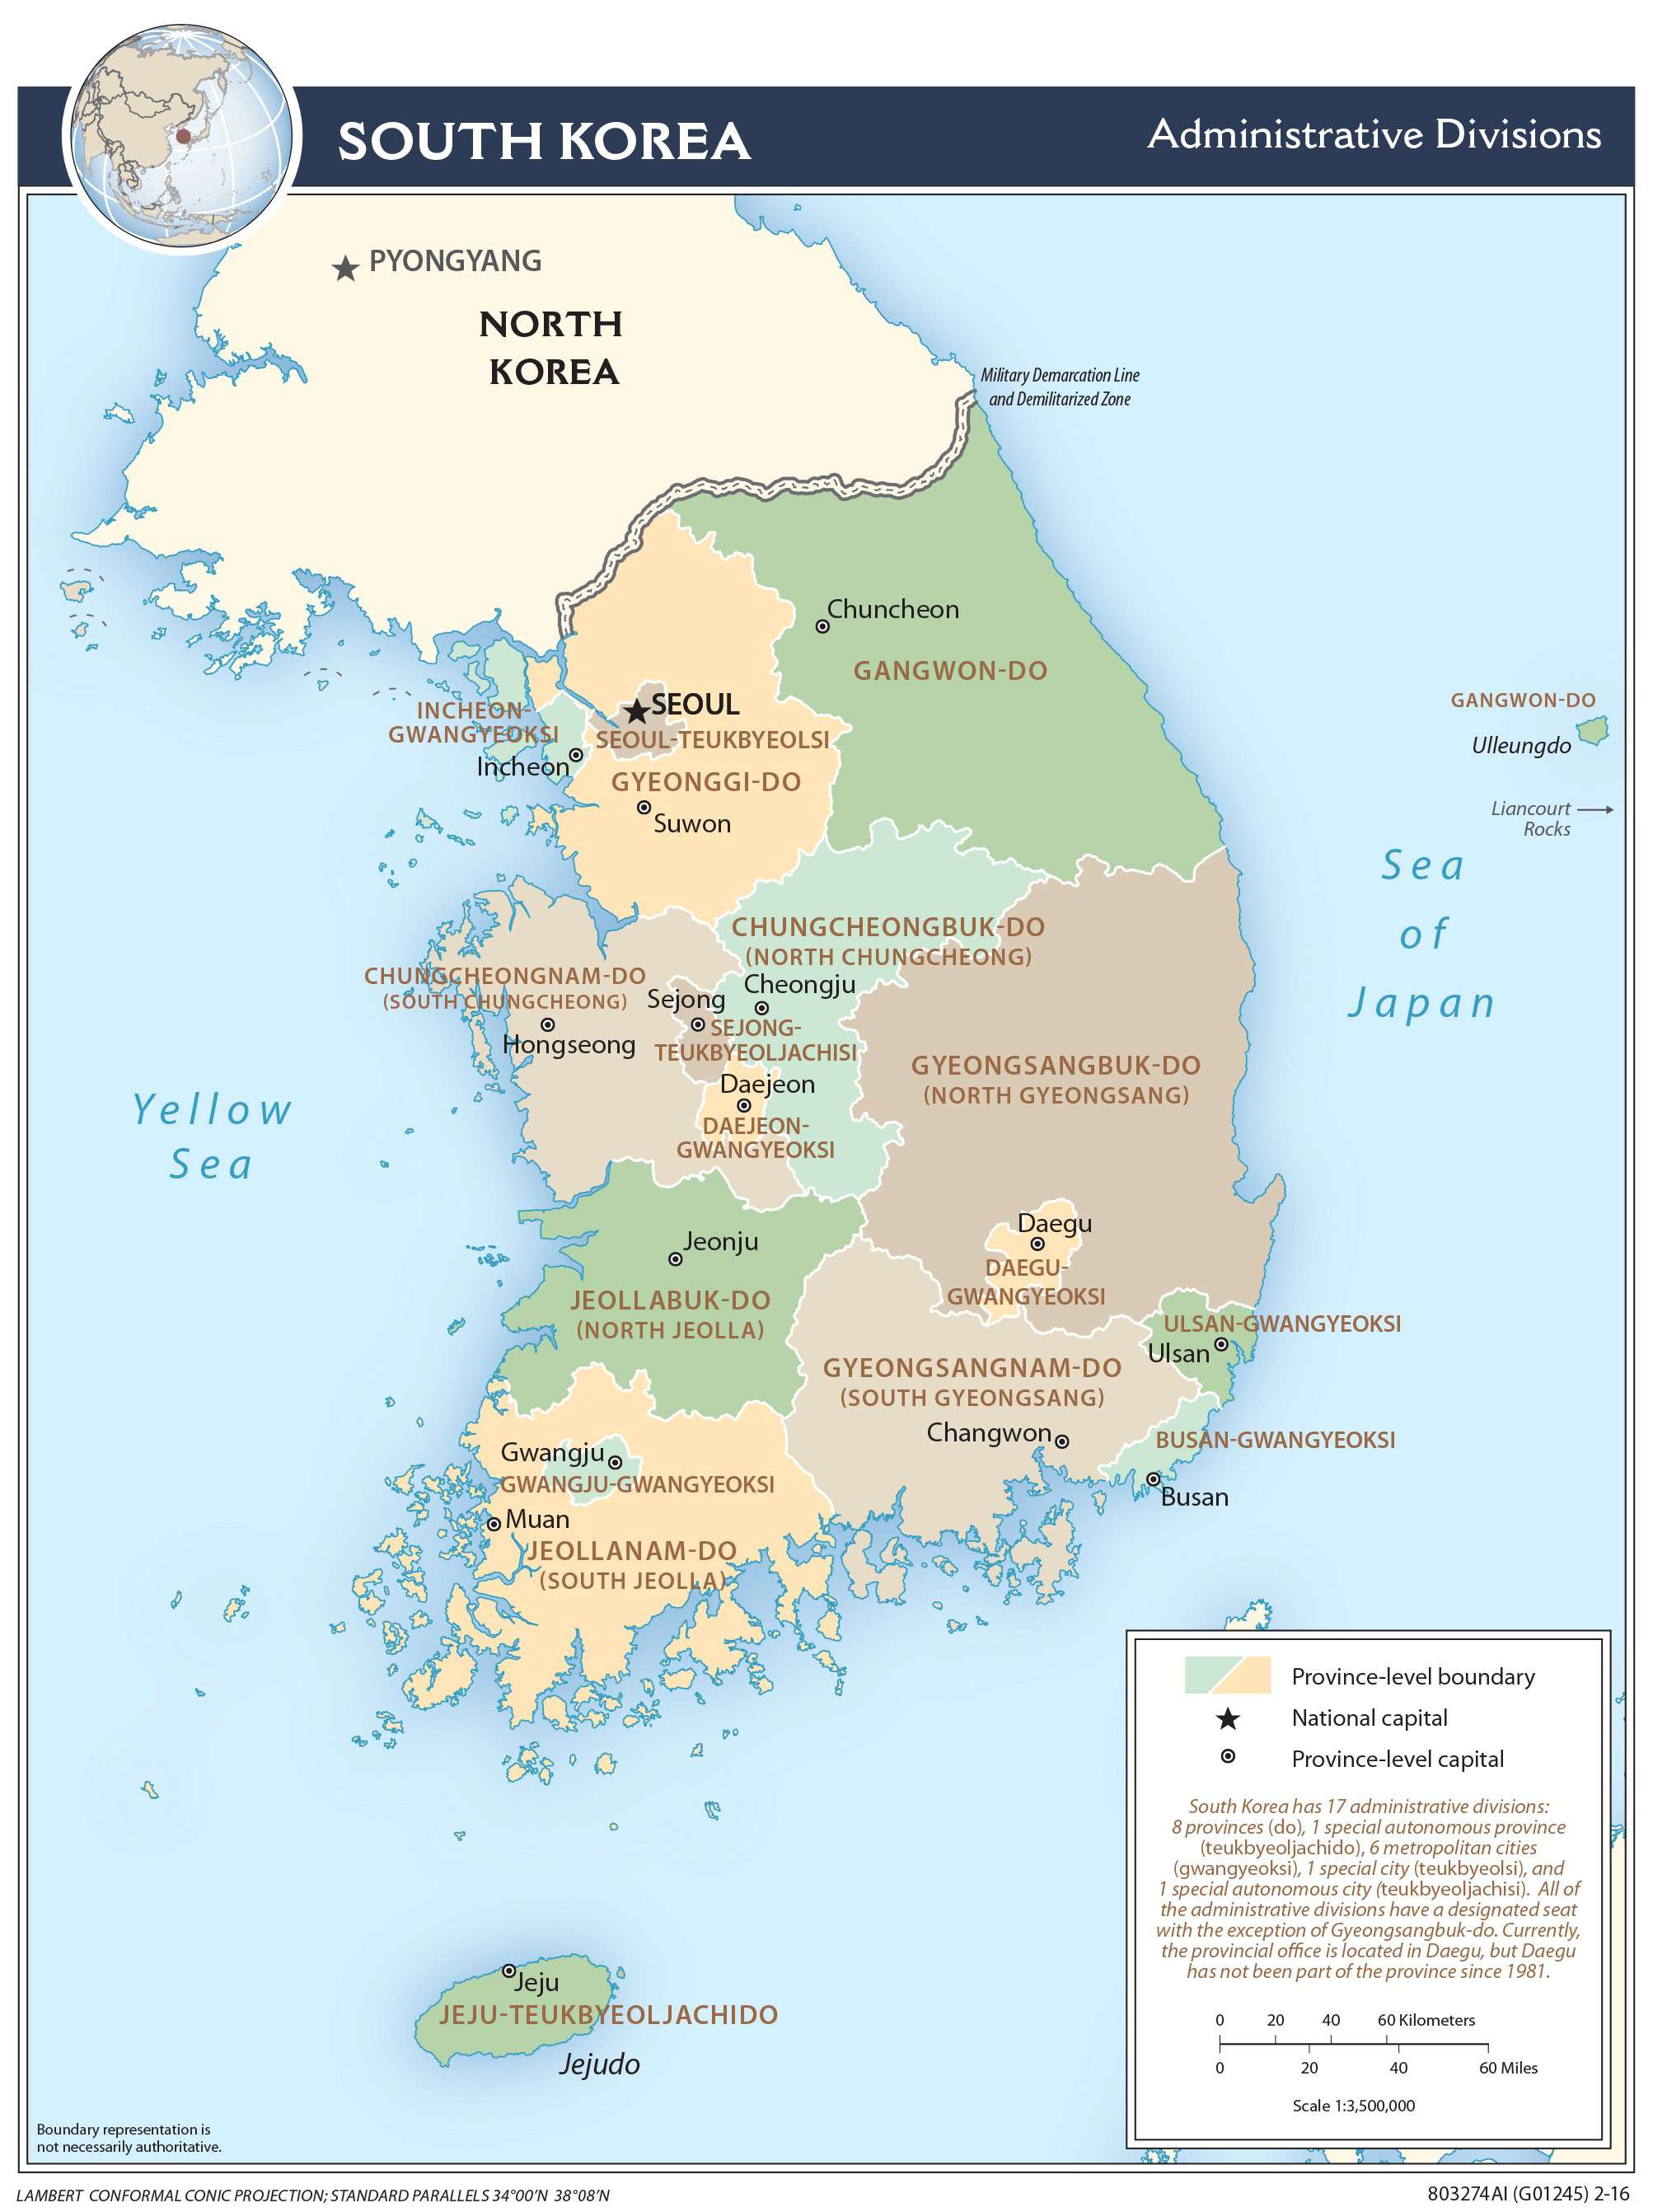 Bản đồ Hàn Quốc Nam Triều Tiên cho bạn cái nhìn tổng quan về địa lý và lịch sử của hai nước này. Khám phá vị trí các tỉnh thành, thủ đô, các điểm tham quan du lịch nổi tiếng và các dấu hiệu đột phá đang xảy ra trong quan hệ giữa hai nước này. Cùng trải nghiệm một thế giới đa dạng và thú vị!